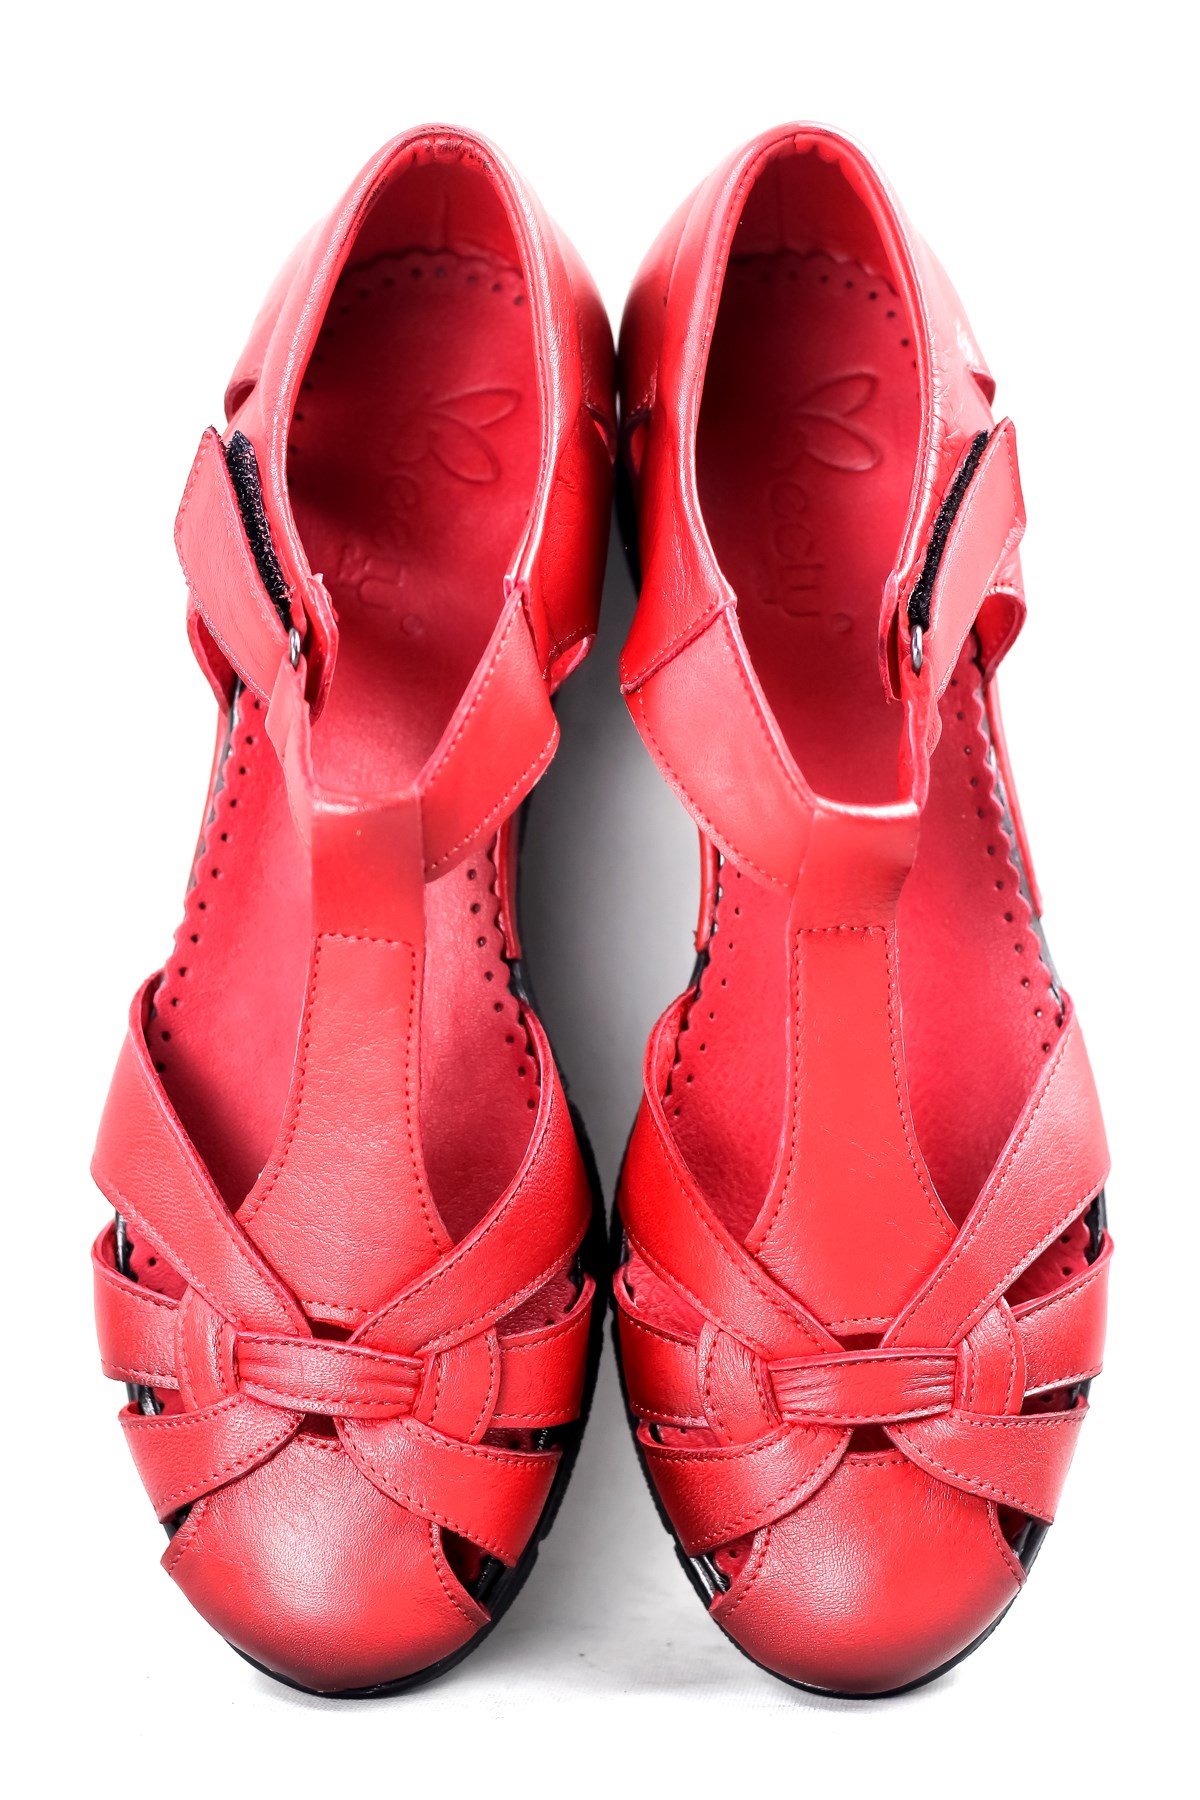 Beety Hakiki Deri Günlük Cırtlı Sandalet Kadın Kırmızı 33.127  A34Z033127-Kırmızı 499,90 TL Tüm ürünlerde %25 indirim